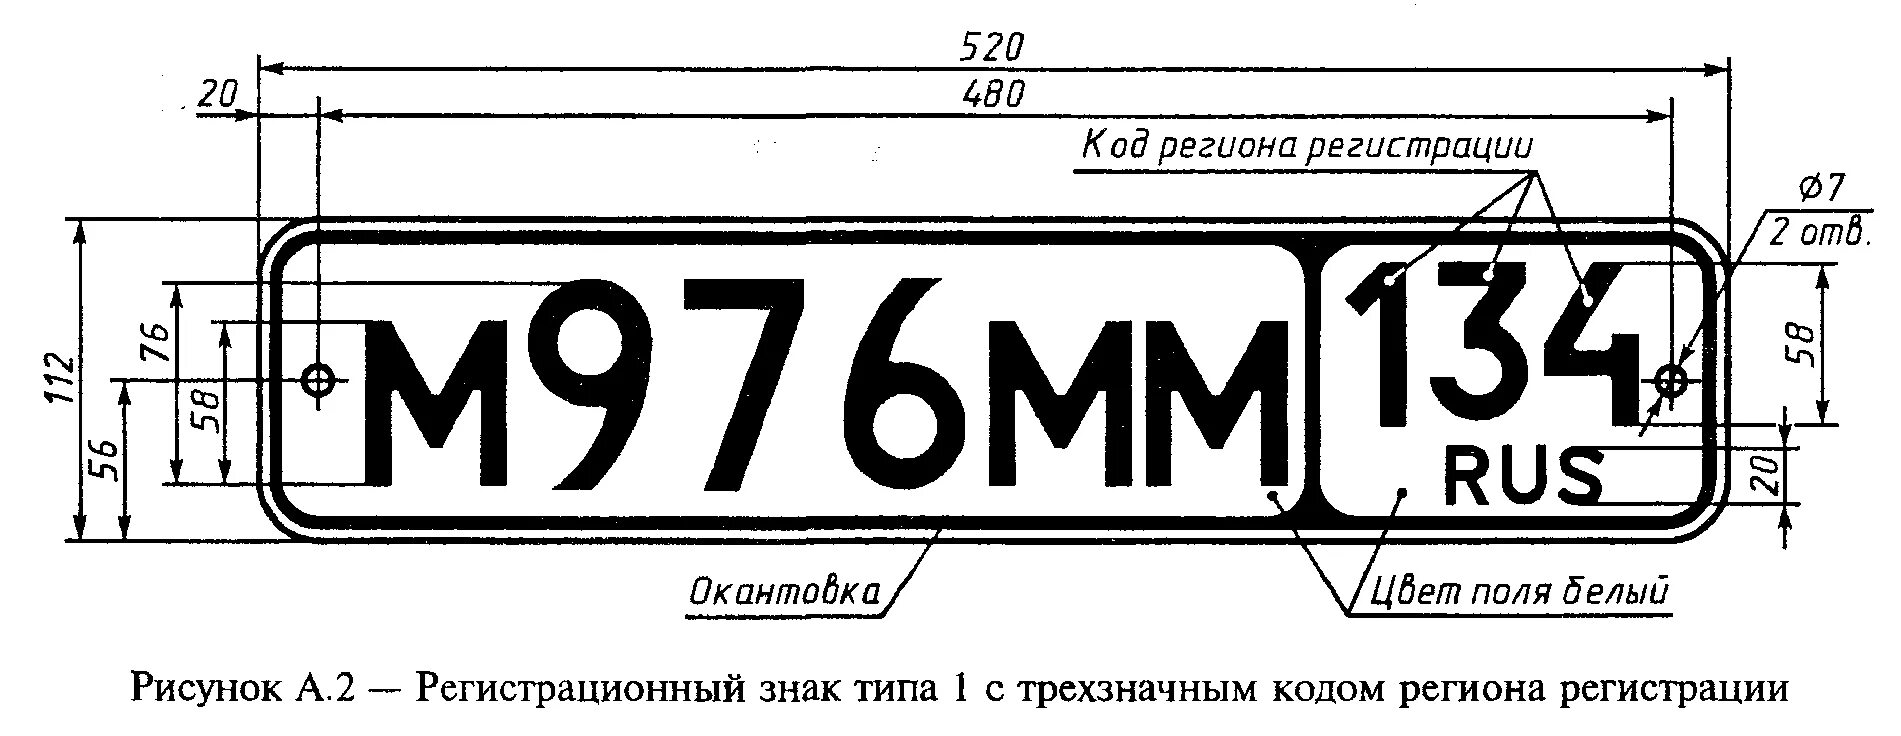 Размер российского номерного знака. Автомобильный номерной знак Размеры. Размер номерного знака автомобиля в России. Размеры российского автомобильного номерного знака. Купить гост номер